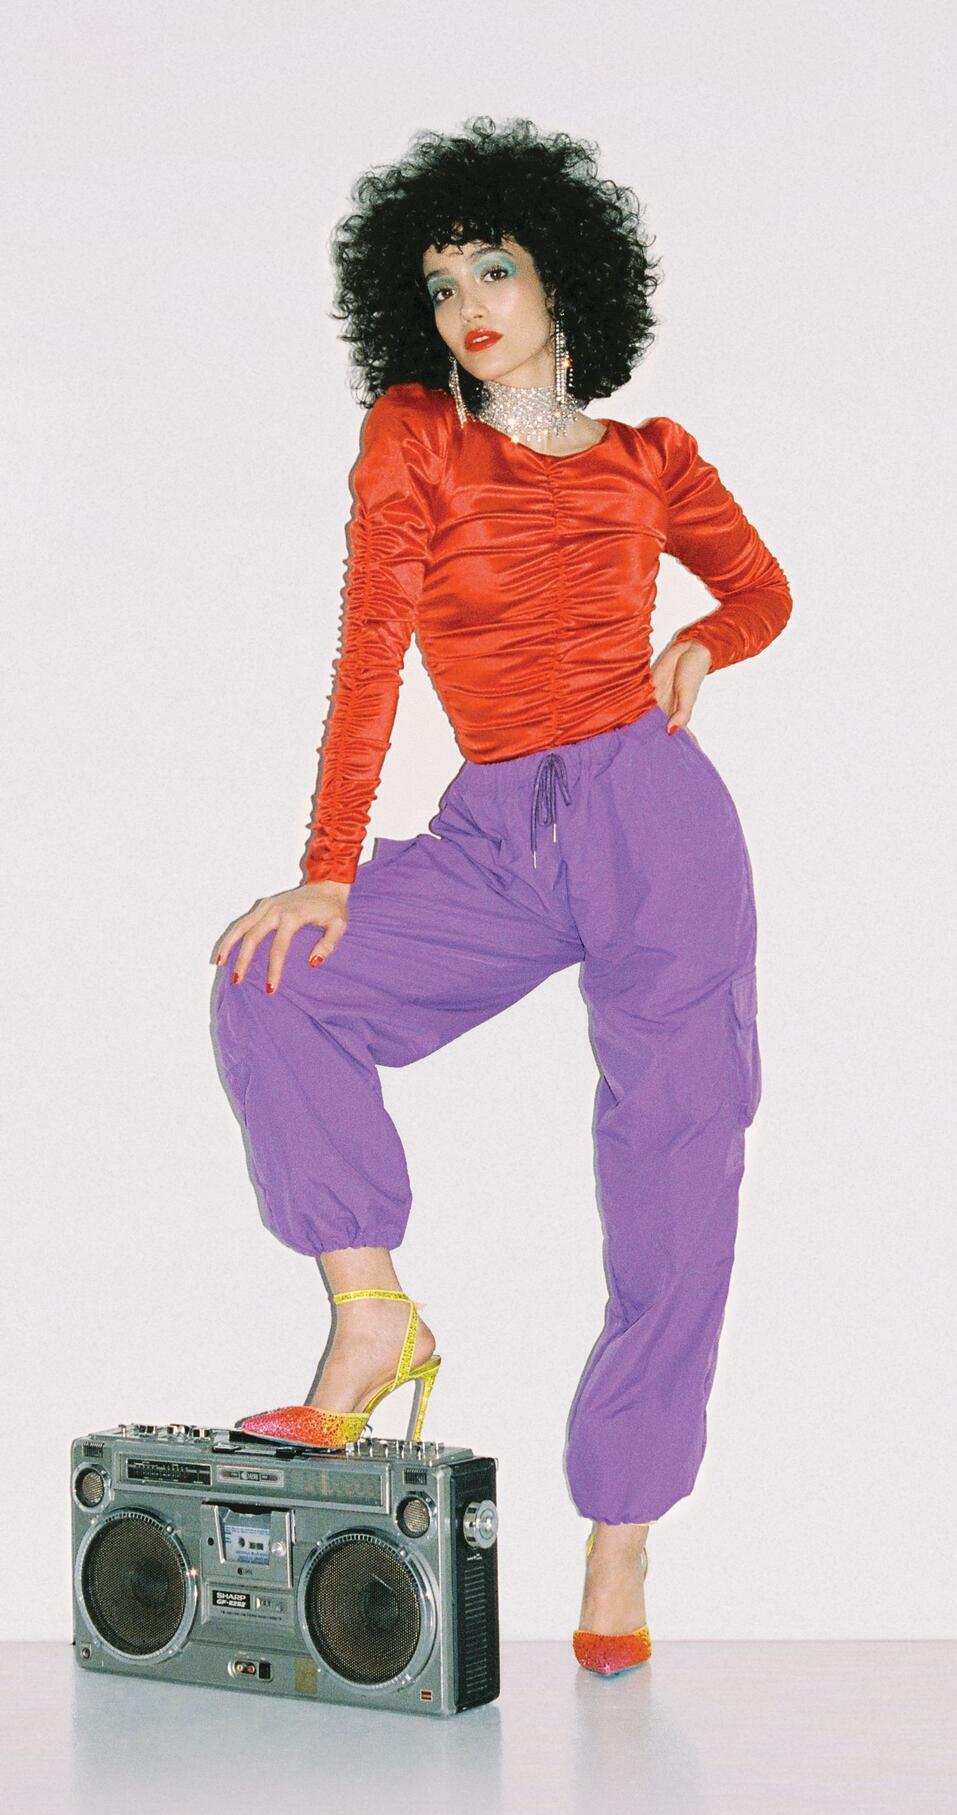 ליהי טולדנו מצטלמת להפקת אופנה בסגנון שנות ה-80